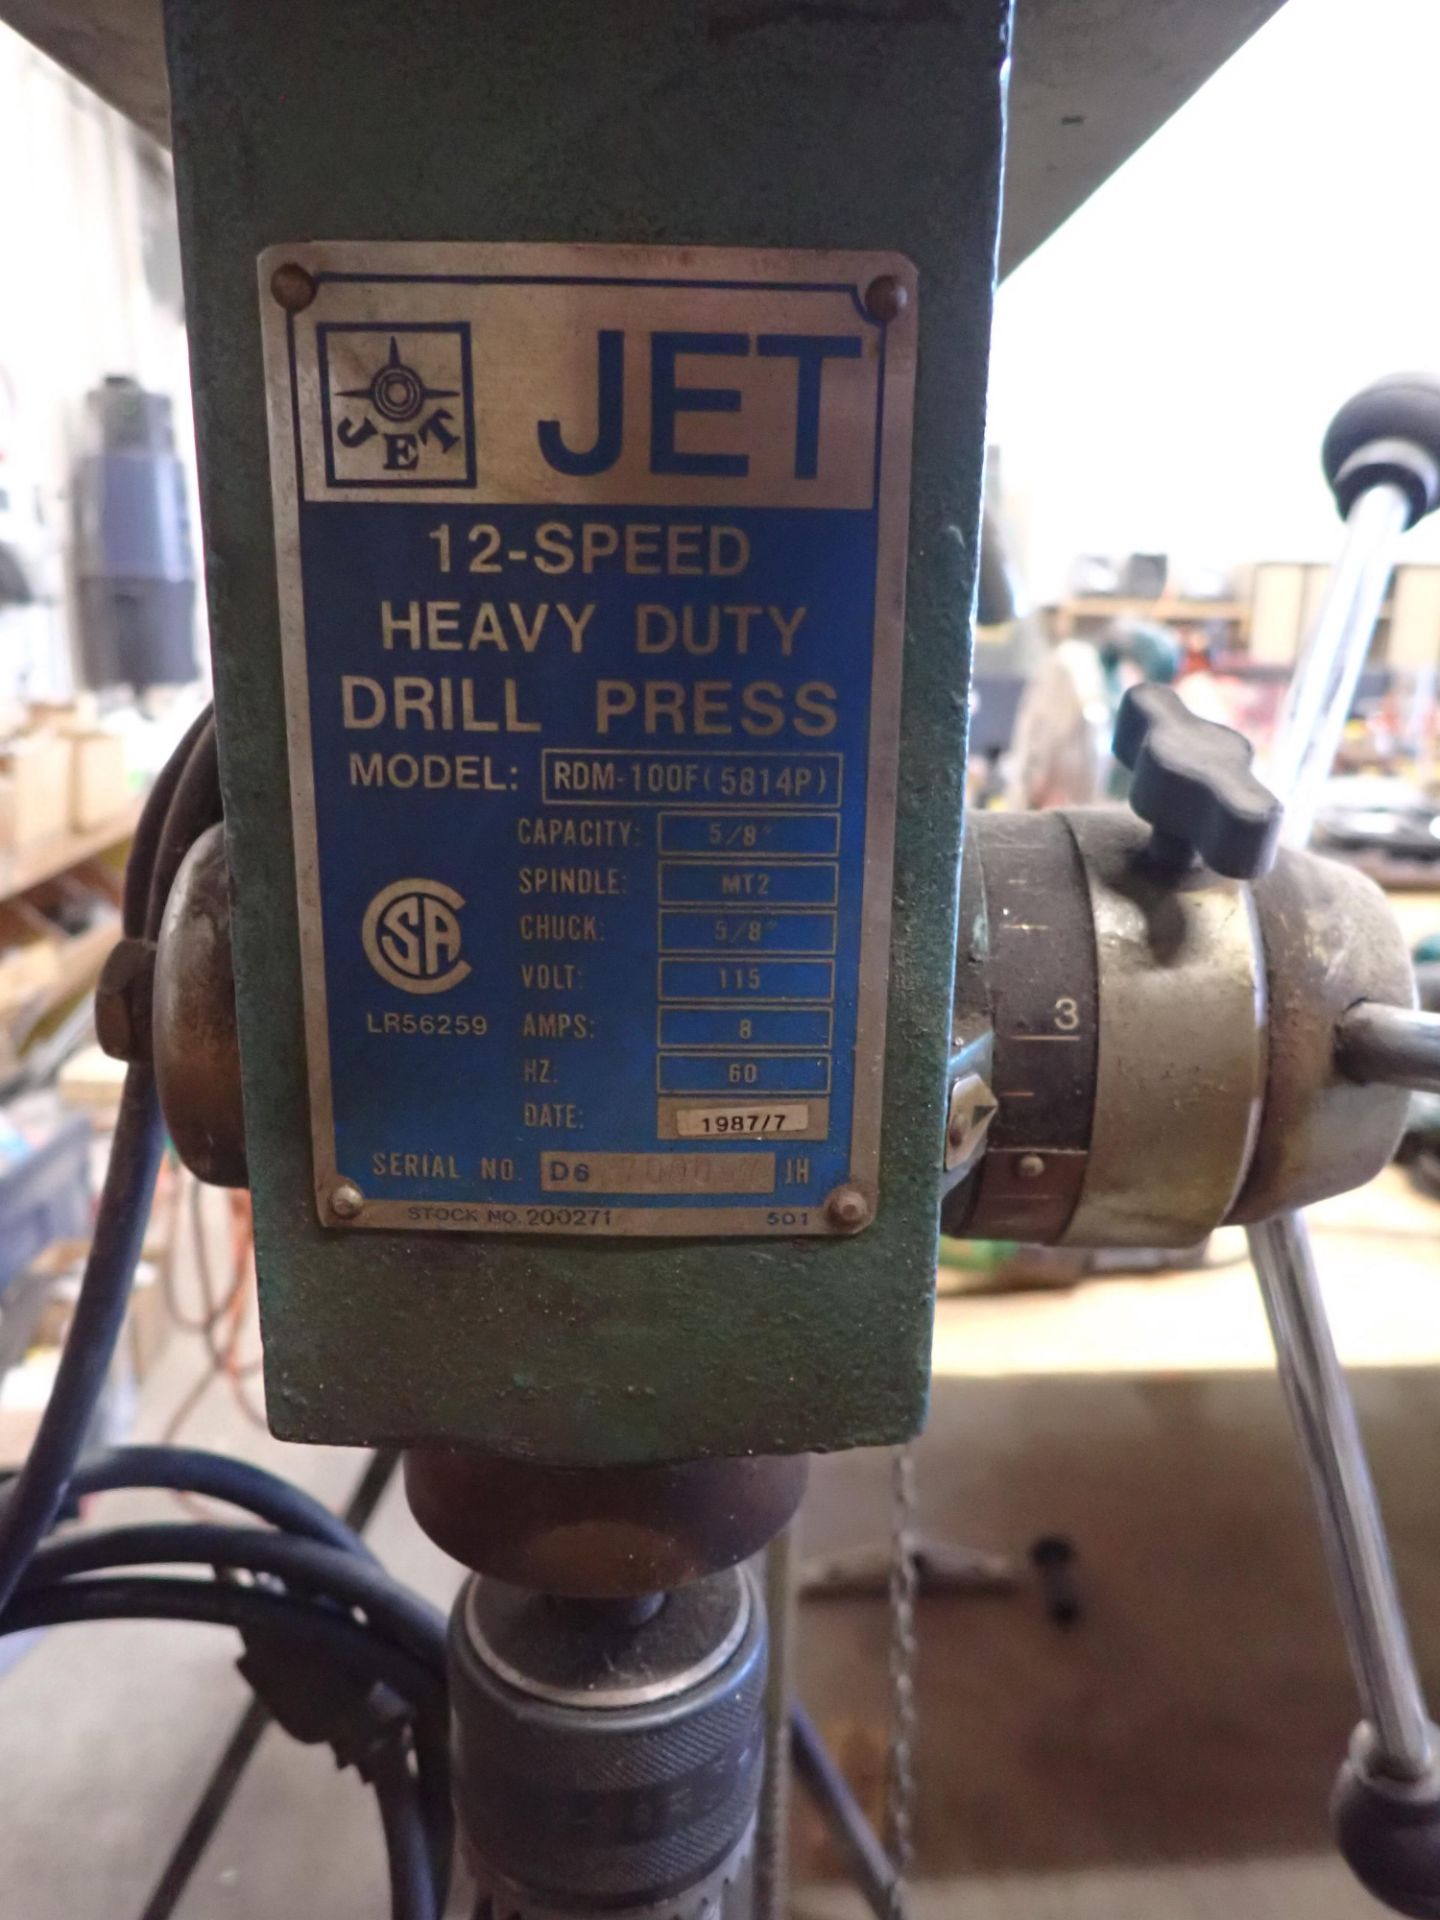 JET RDM-100F(5814P) 5/8" PEDESTAL DRILL PRESS - Image 2 of 3